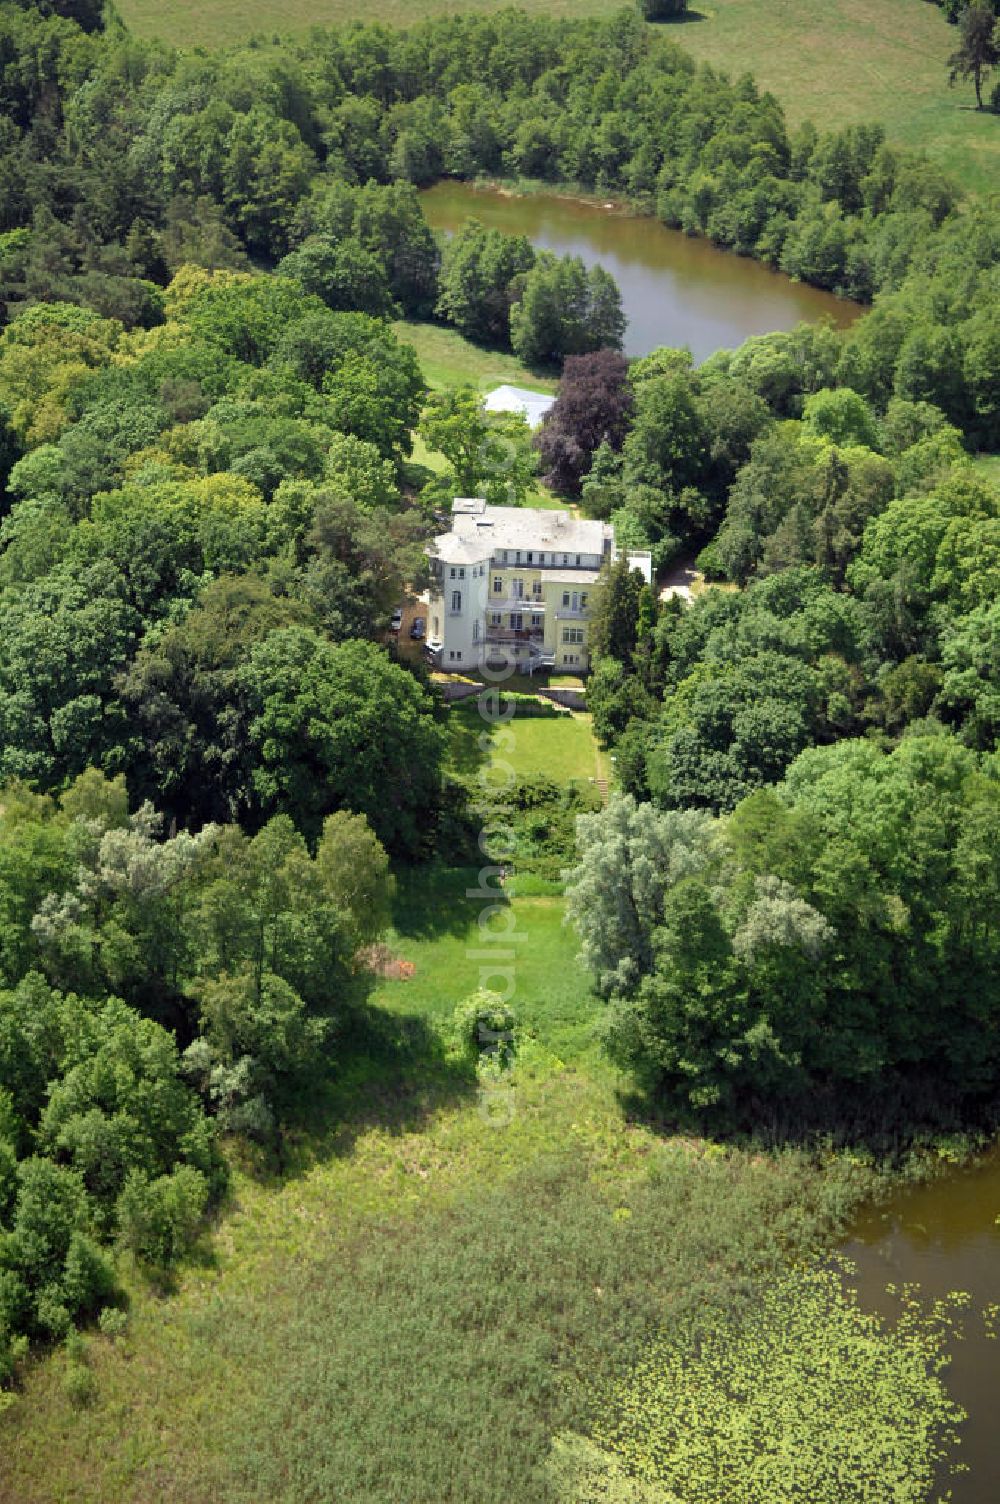 Aerial photograph Dambeck - Blick auf den AWO SANO Familienferienpark in Dambeck am Müritz-Nationalpark. Anschrift: Dambeck 2 in 17237 Kratzeburg - Dambeck;